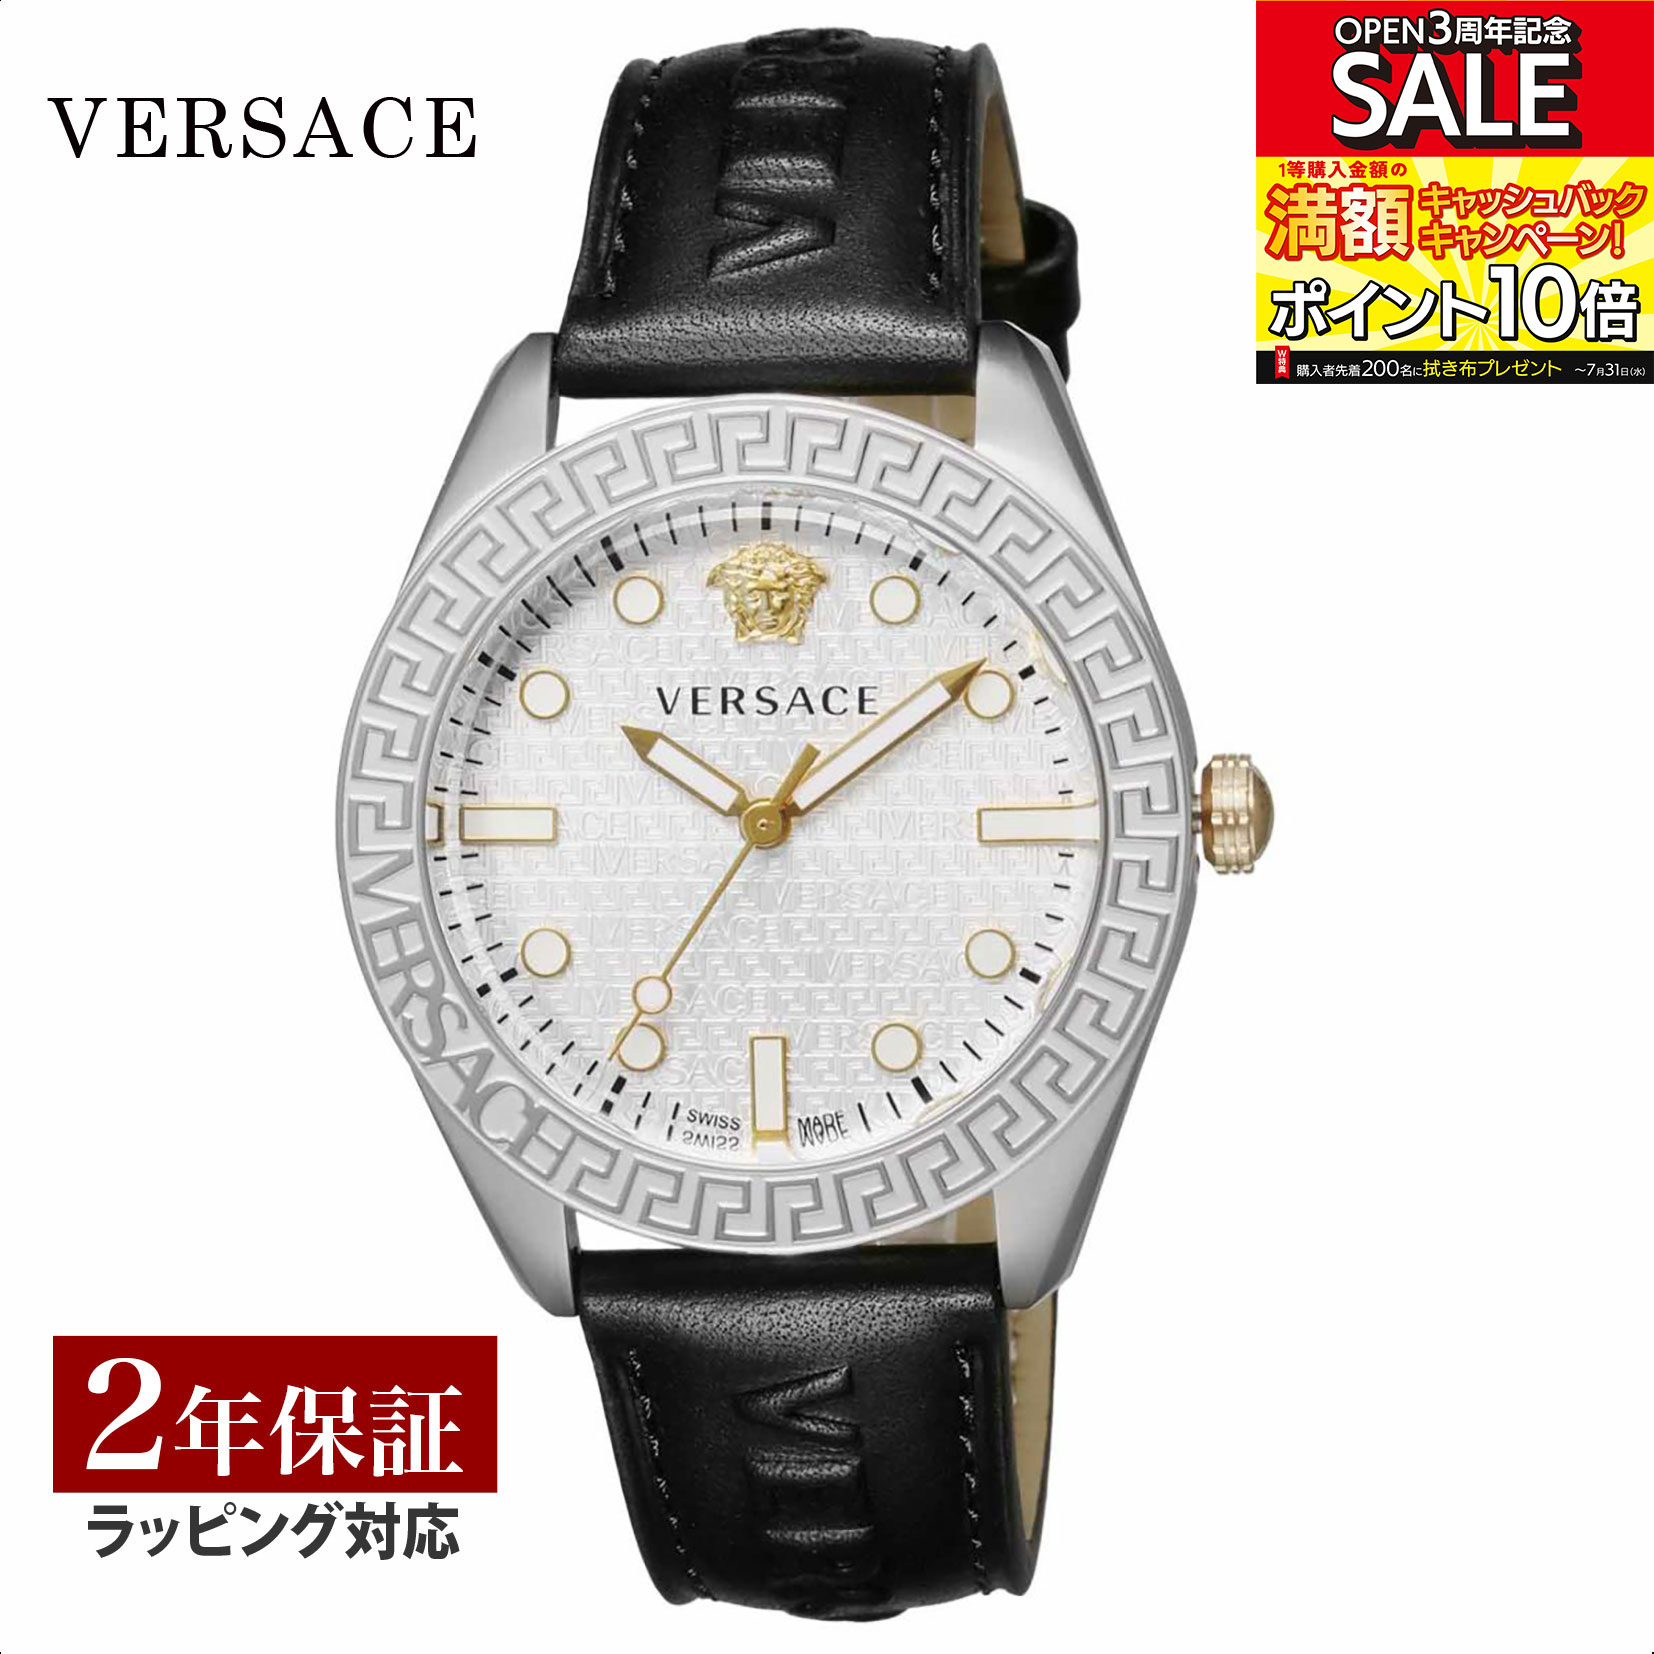 【当店限定】 ヴェルサーチェ ヴェルサーチ VERSACE メンズ 時計 GRECA DOME グレカ ドーム クオーツ シルバー VE2T00122 時計 腕時計 高級腕時計 ブランド